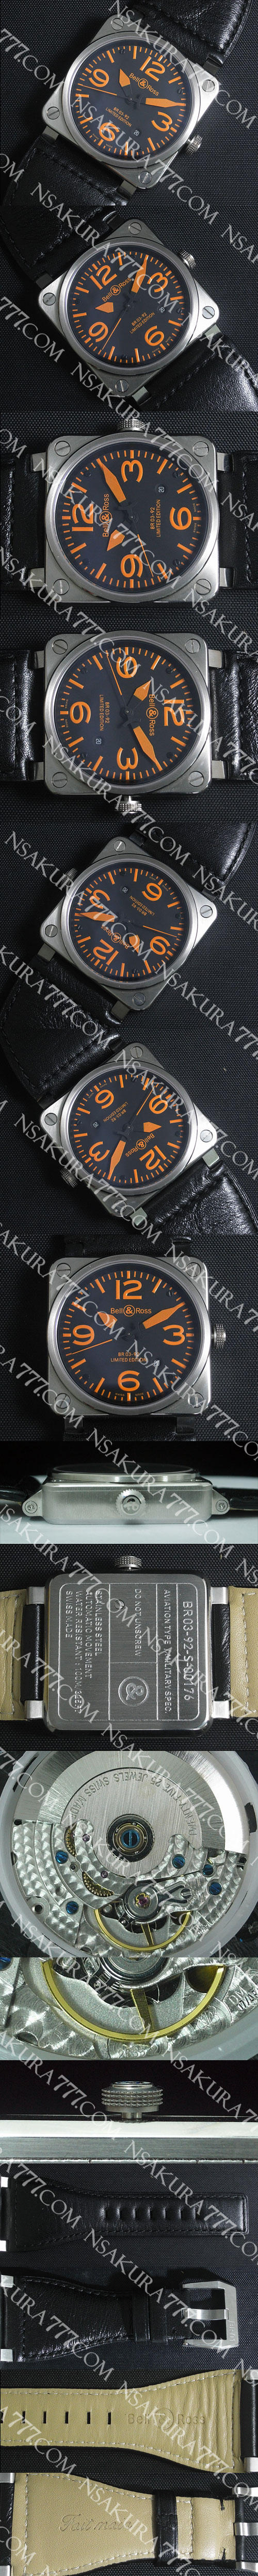 レプリカ時計ベル&ロス BR 03-92 Swiss 2836-2 カスタム ムーブメント搭載 - ウインドウを閉じる